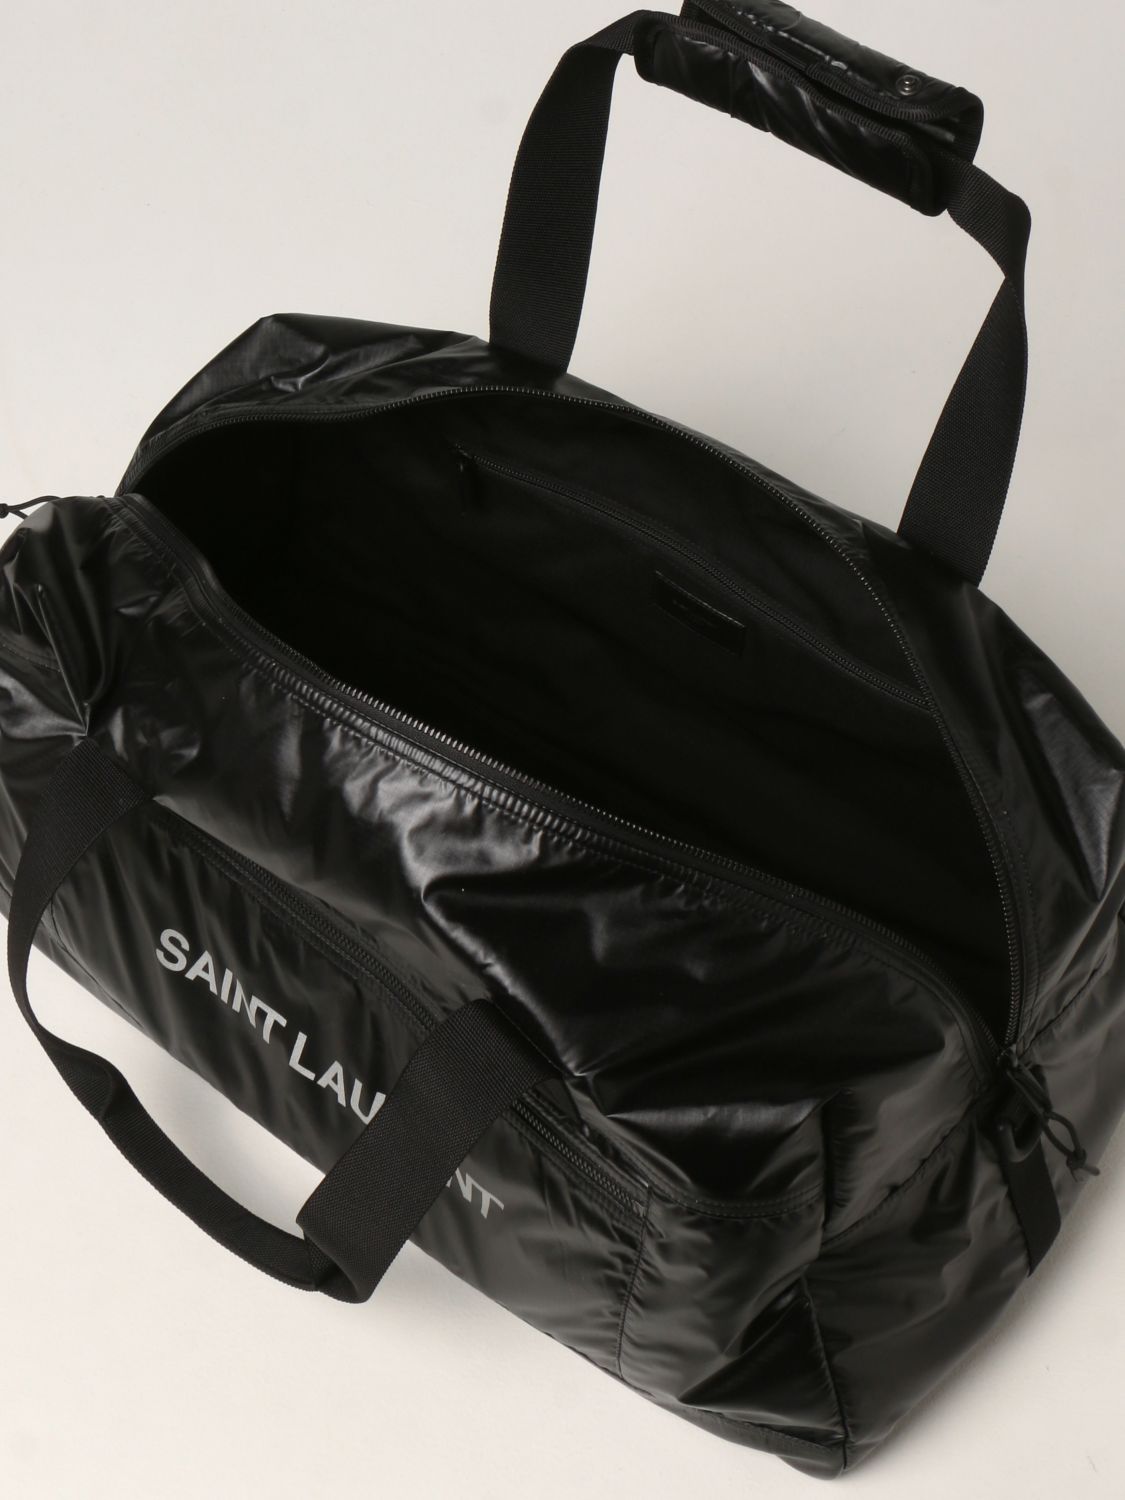 Travel bag Saint Laurent: Saint Laurent Nuxx Duffle nylon travel bag black 5